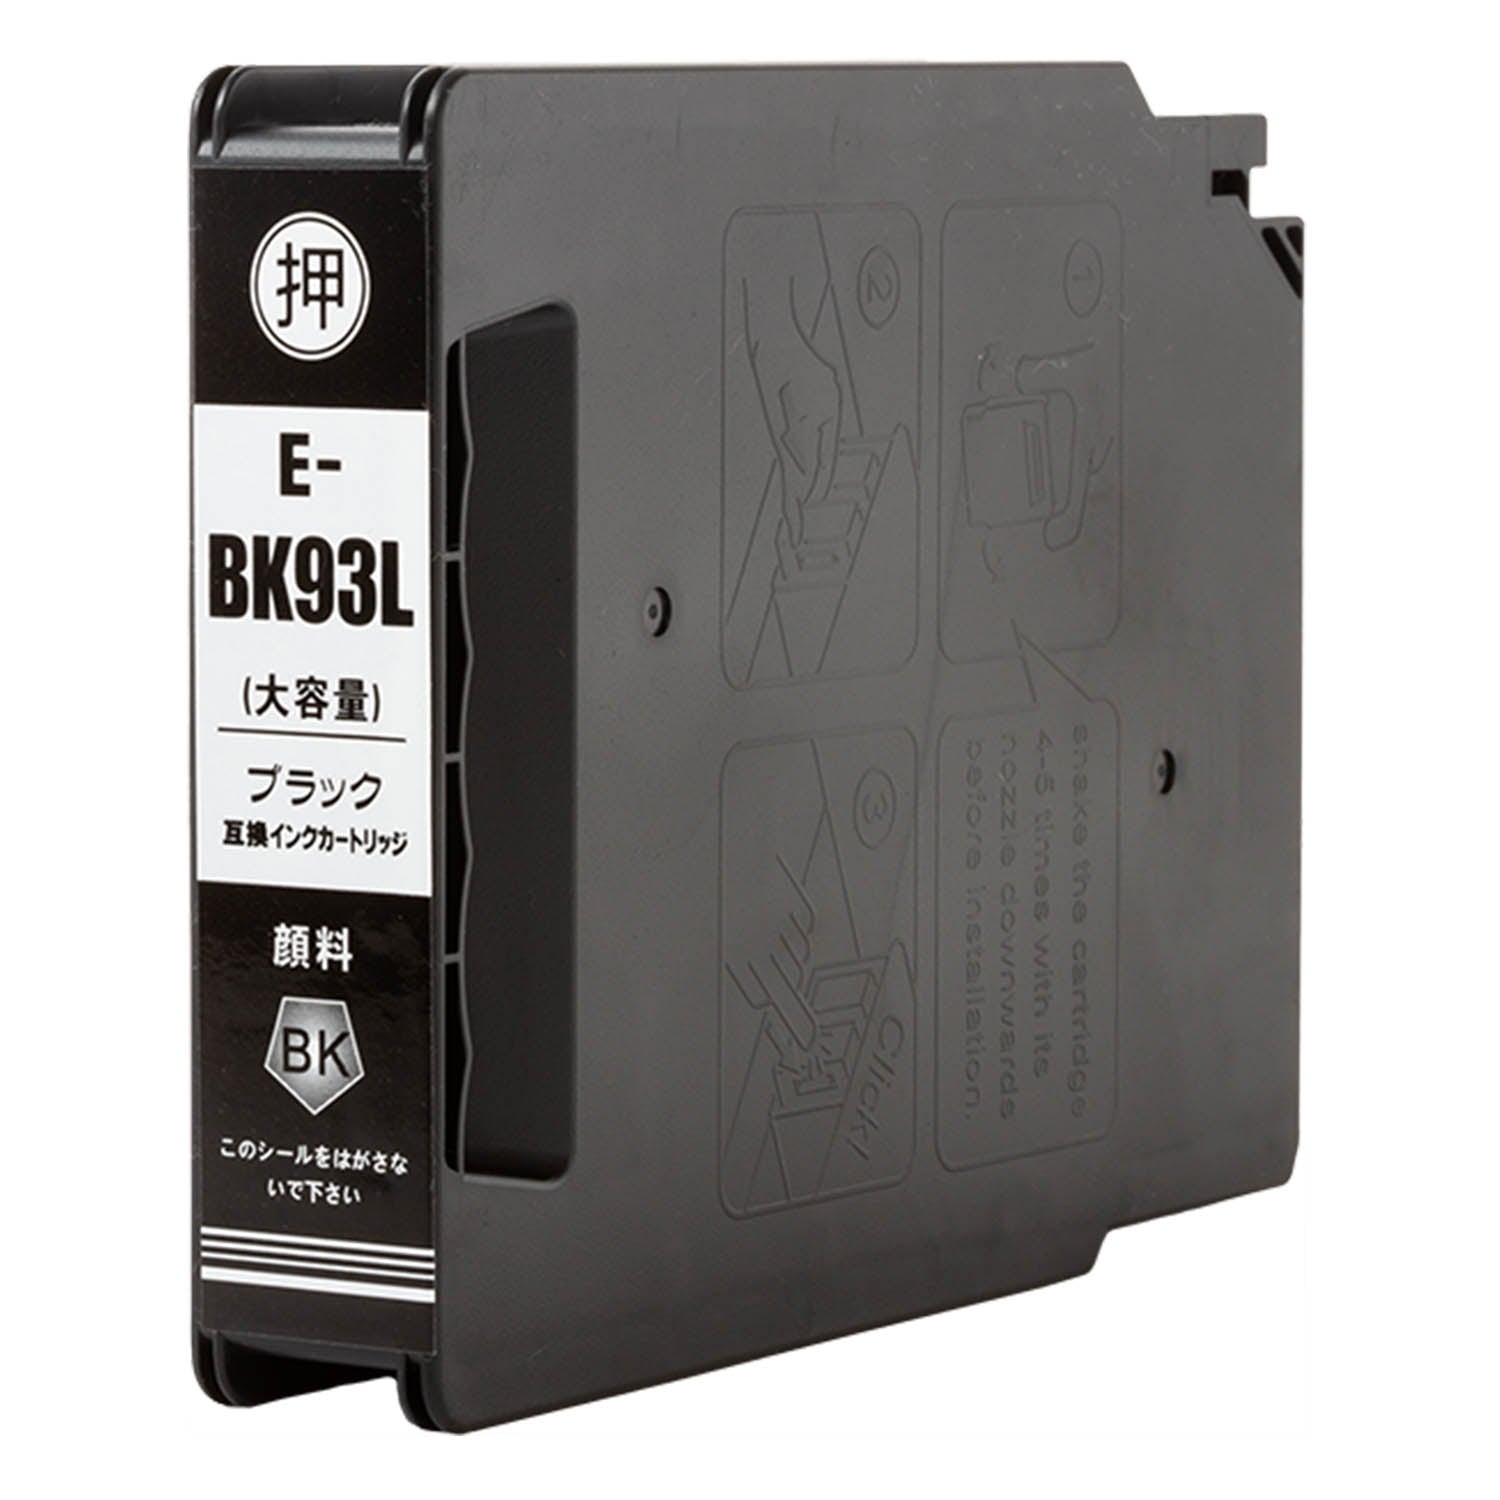 エプソン用 ICBK93L 互換インク ブラック Lサイズ